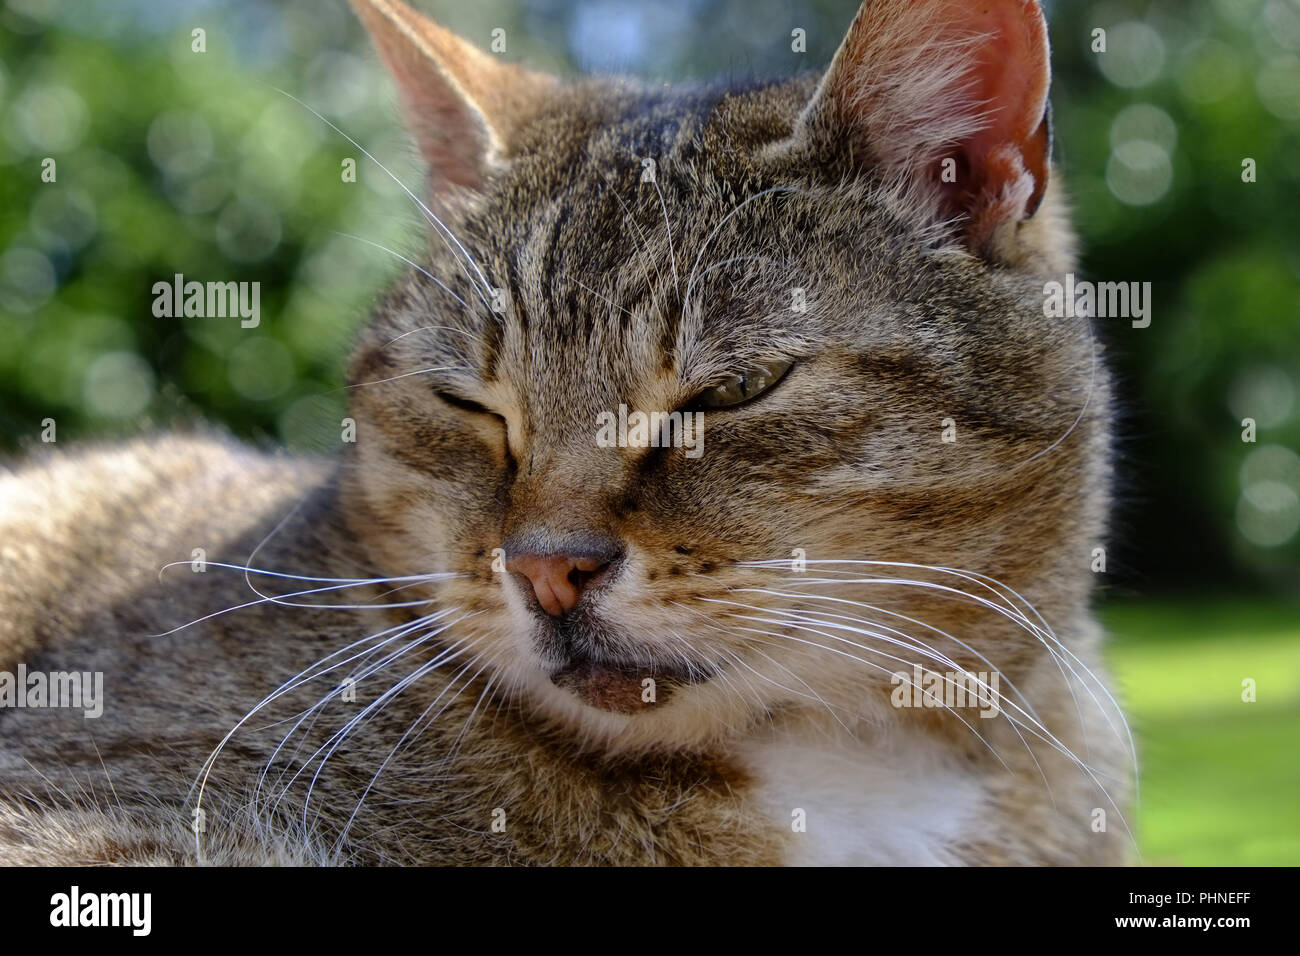 Tabby house cat Stock Photo